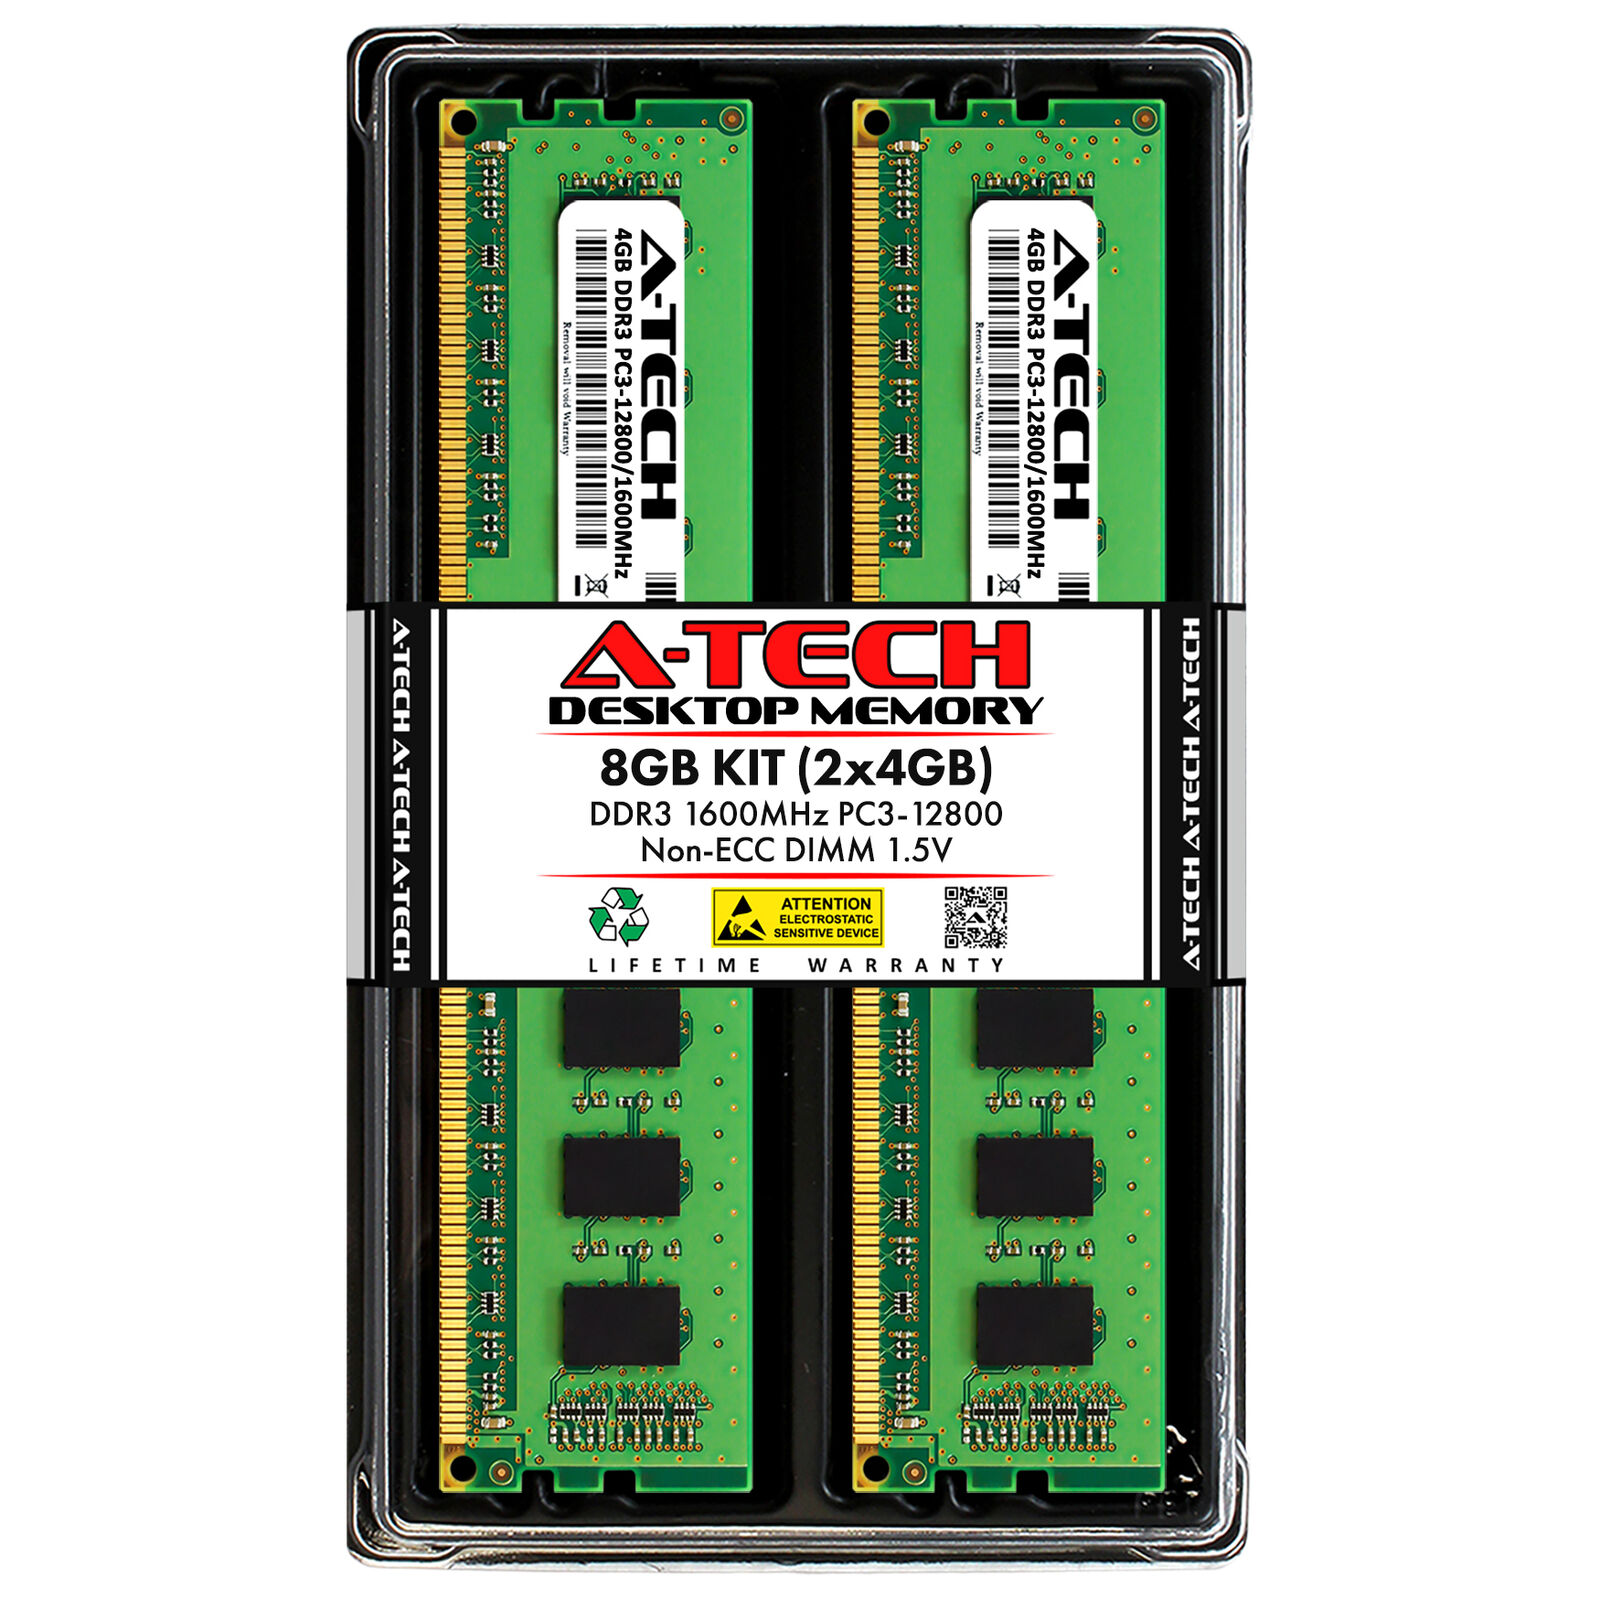 8GB 2x4GB PC3-12800U ASRock H61M-DP3 Z68 Extreme4 Fatal1ty Z97 Killer Memory RAM